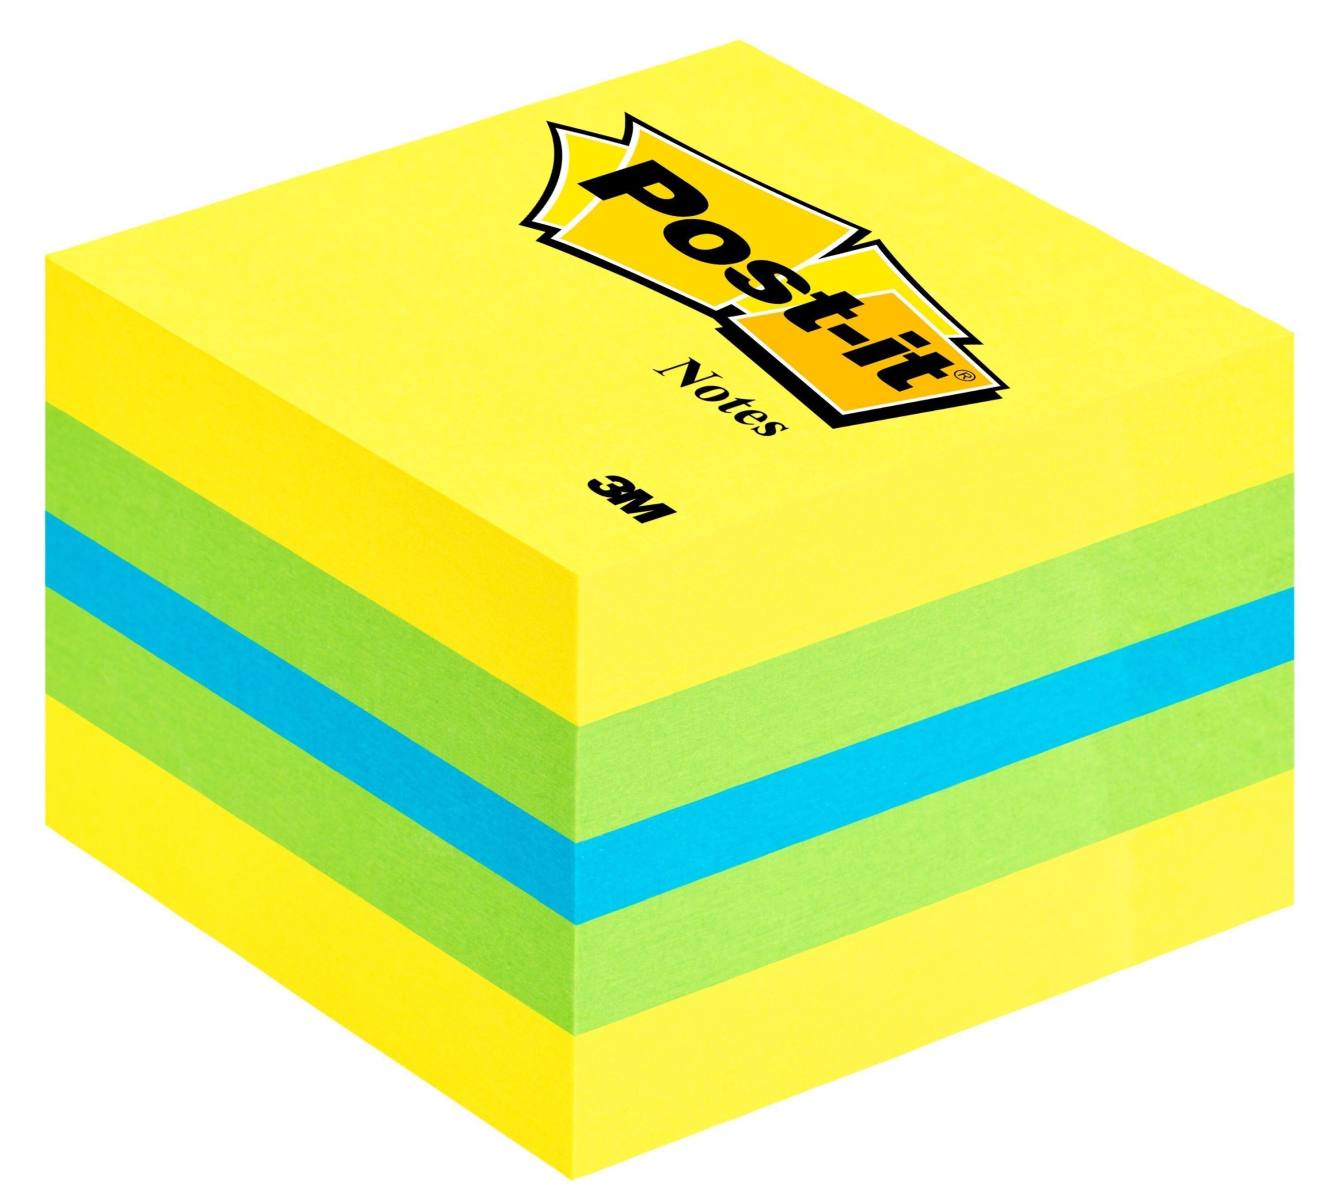 3M Post-it Mini Cube 2051-L, 51 mm x 51 mm, blu, verde lime, giallo limone, 1 cubo da 400 fogli